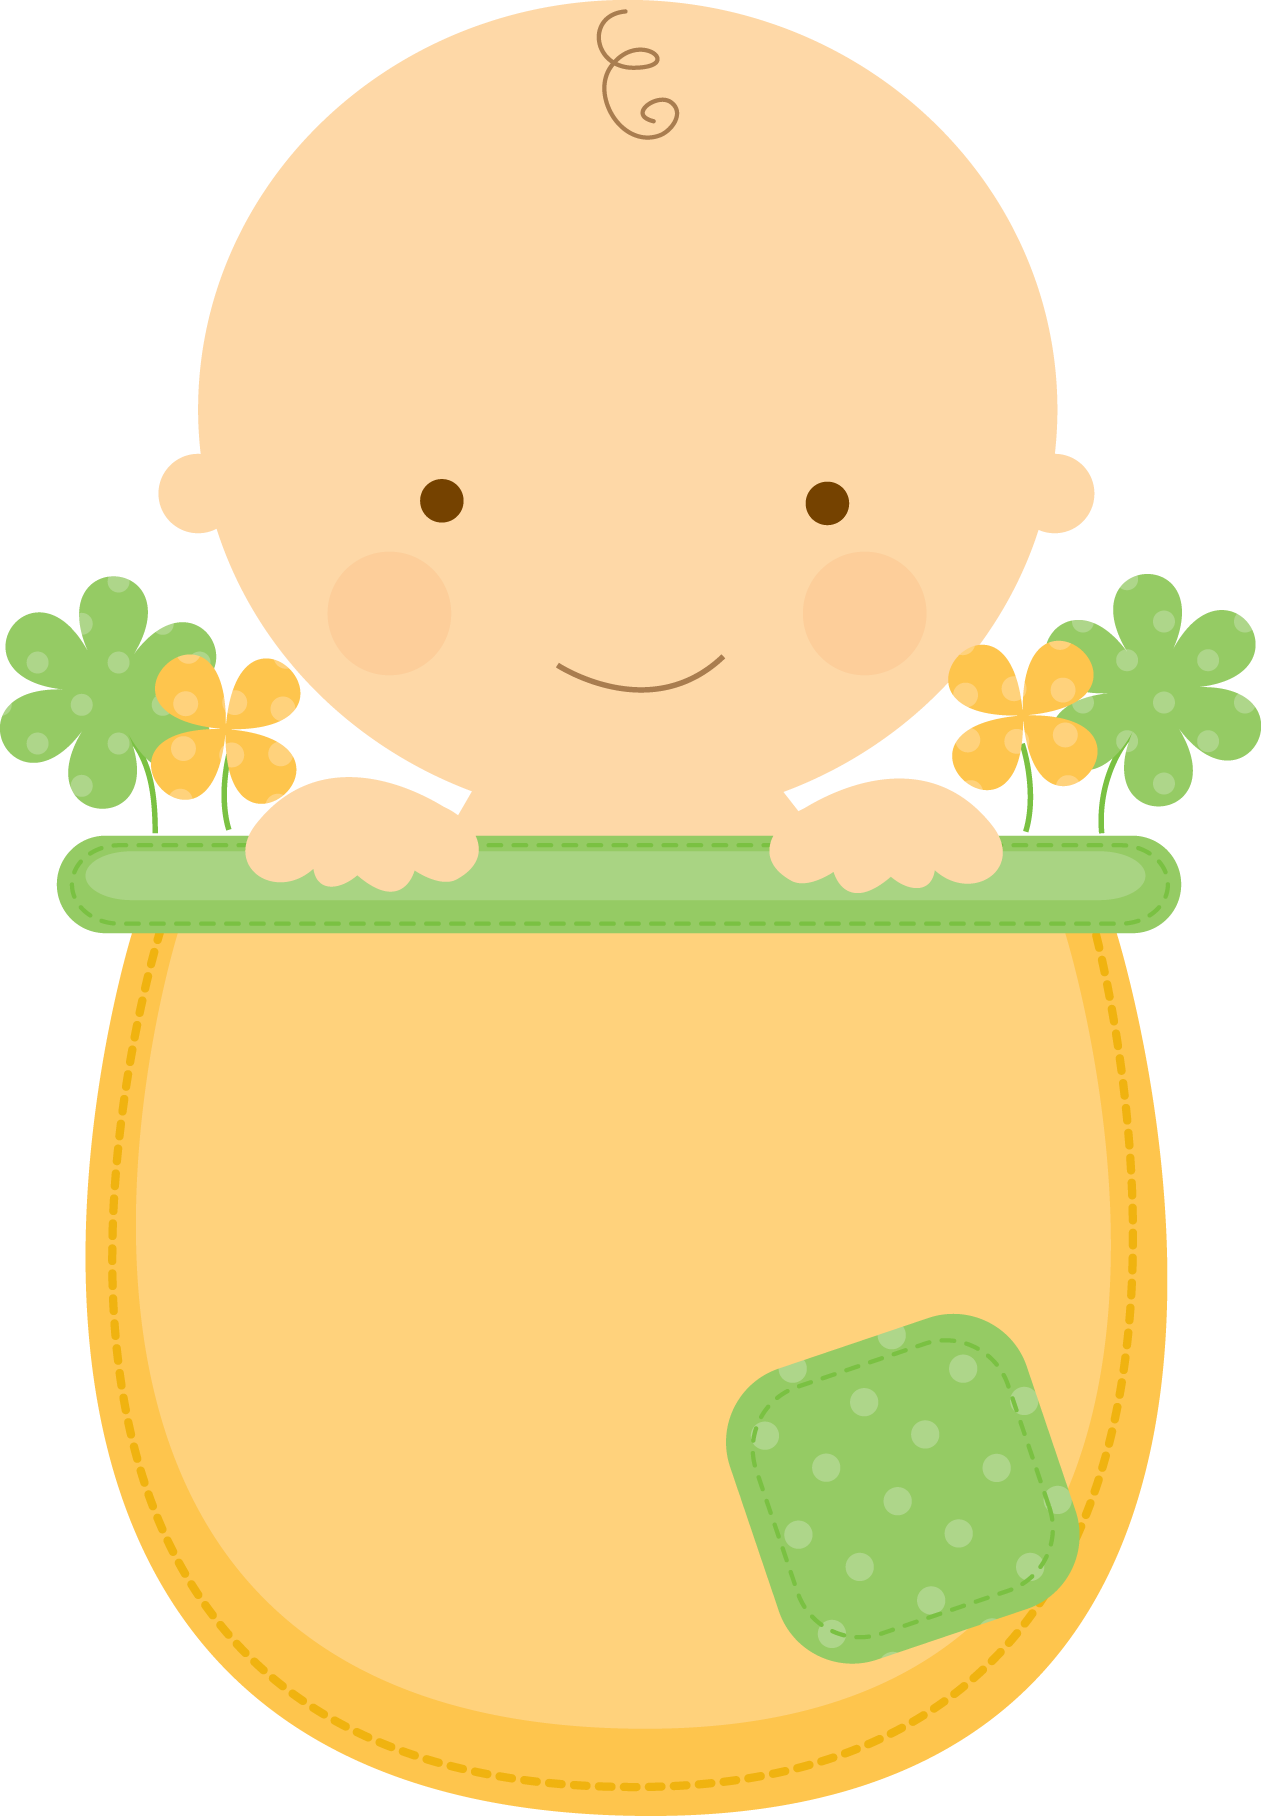 Flowerpot babies babyinflowerpot boy. Witch clipart pregnant